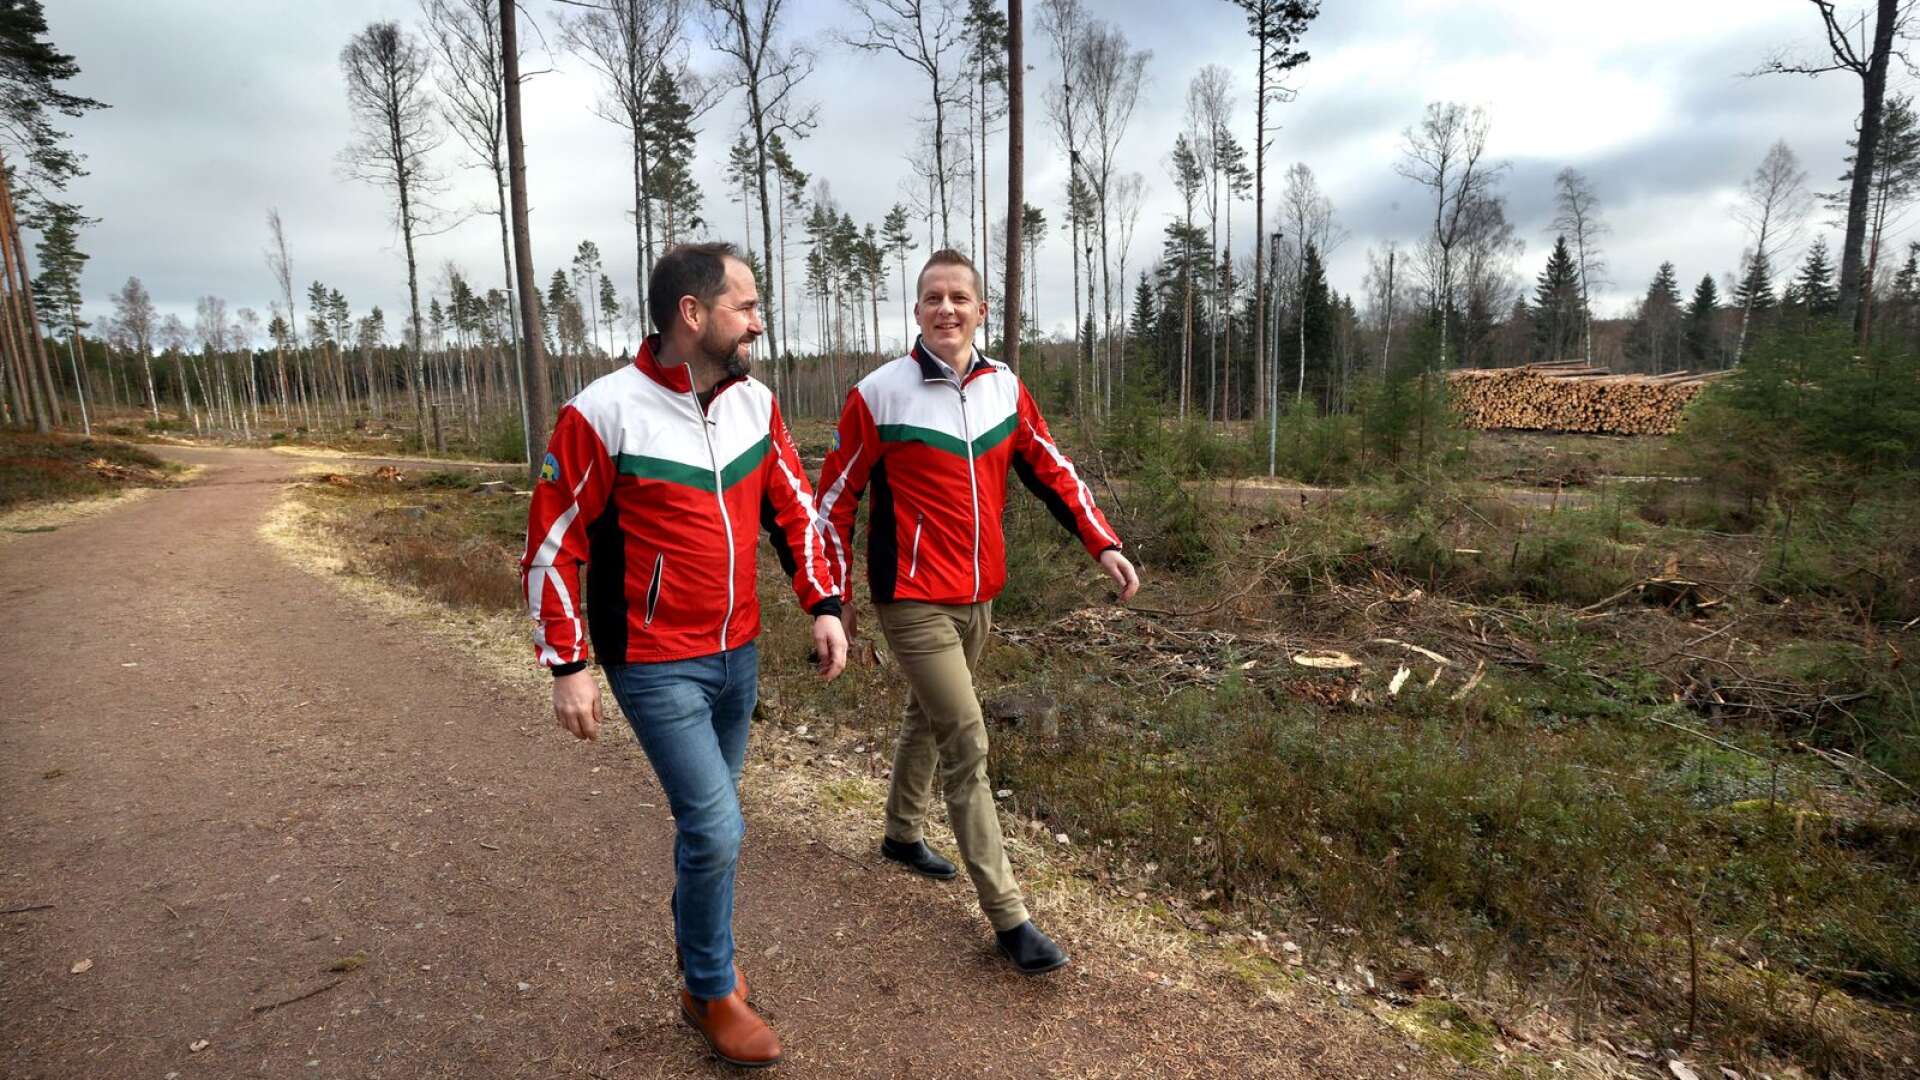 Stora satsningar väntar i Tyrskogen efter att kommunen tvingats avverka ett stort antal träd på grund av granbarkborreangrepp konstaterar OK Tyrs ordförande Martin Ljungberg och Magnus Stråle som är klubbens marknadsansvarige.